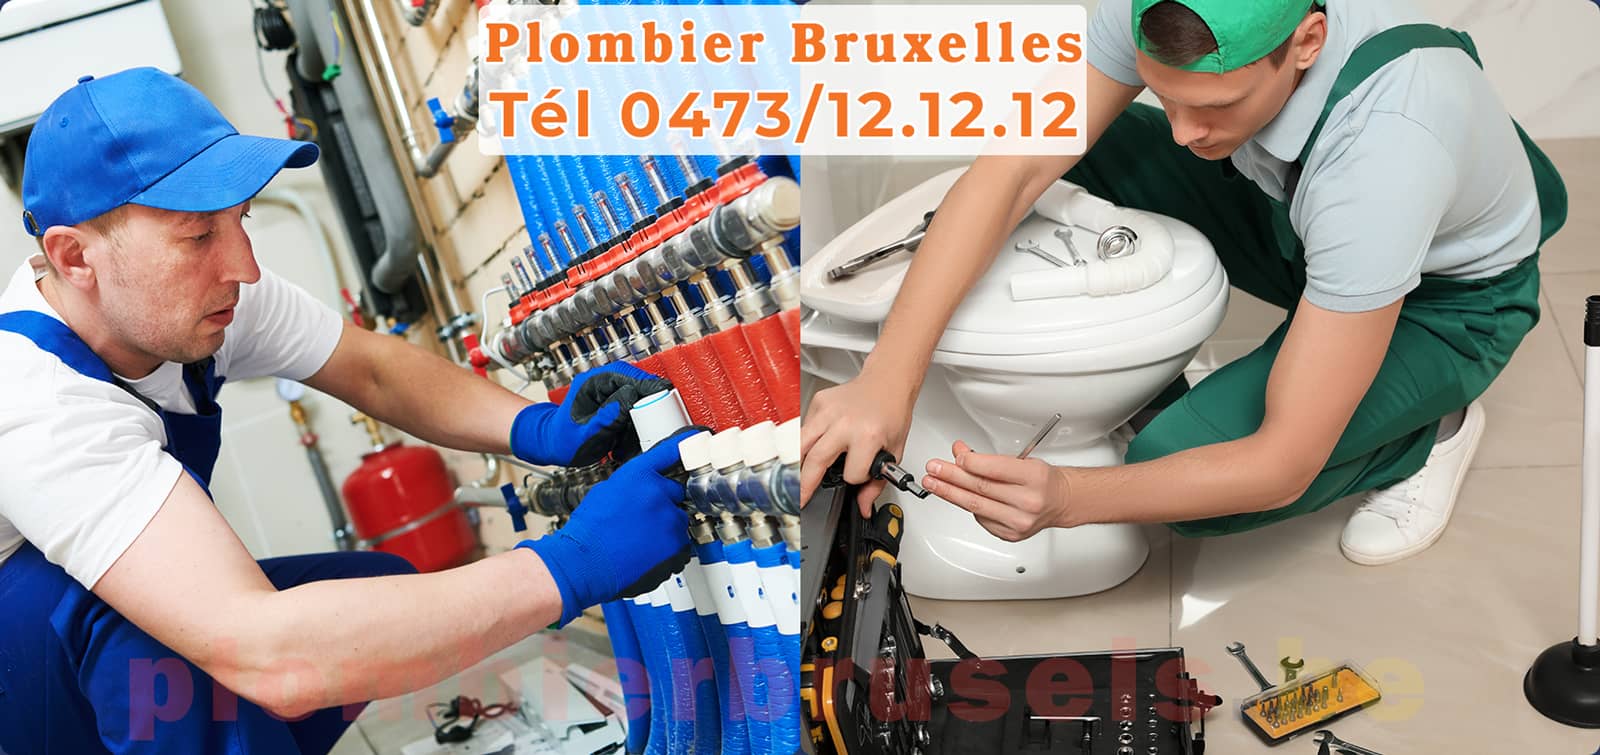 Plombier Bruxelles service de Plomberie tél 0473/12.12.12